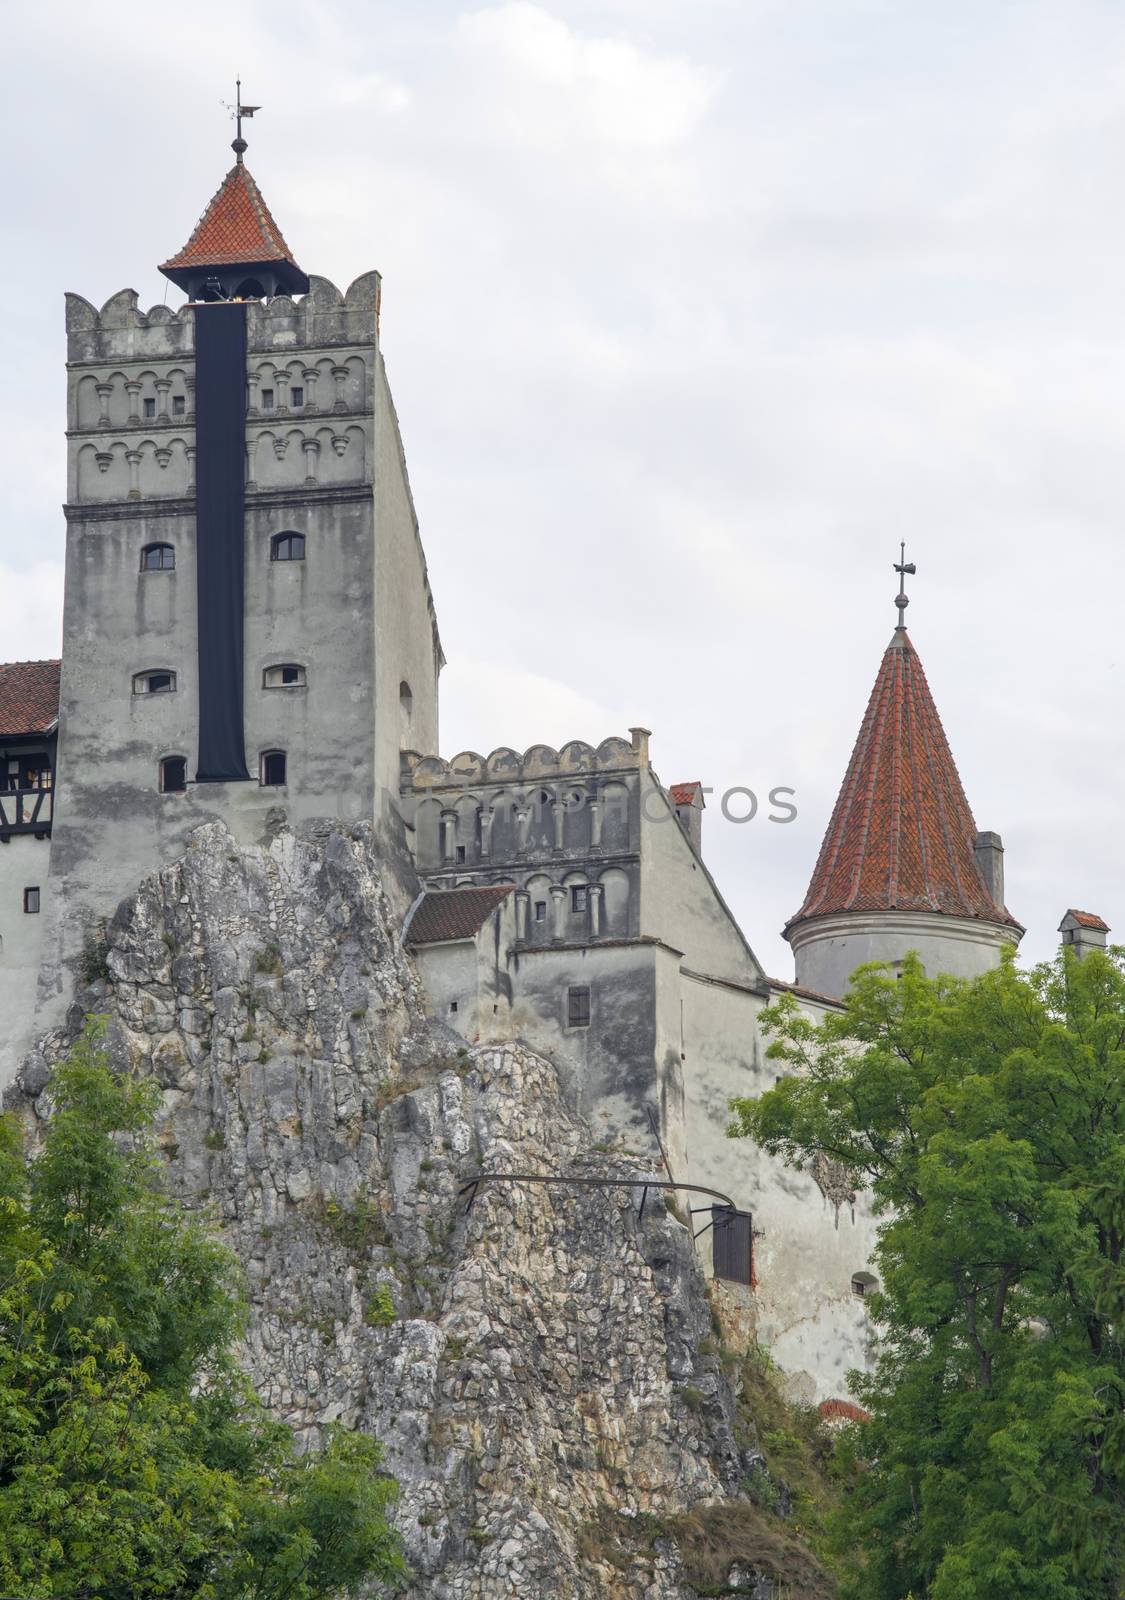 Dracula's Castle (Bran Castle), legendar residence of Vlad Tepes, built on a huge rock.